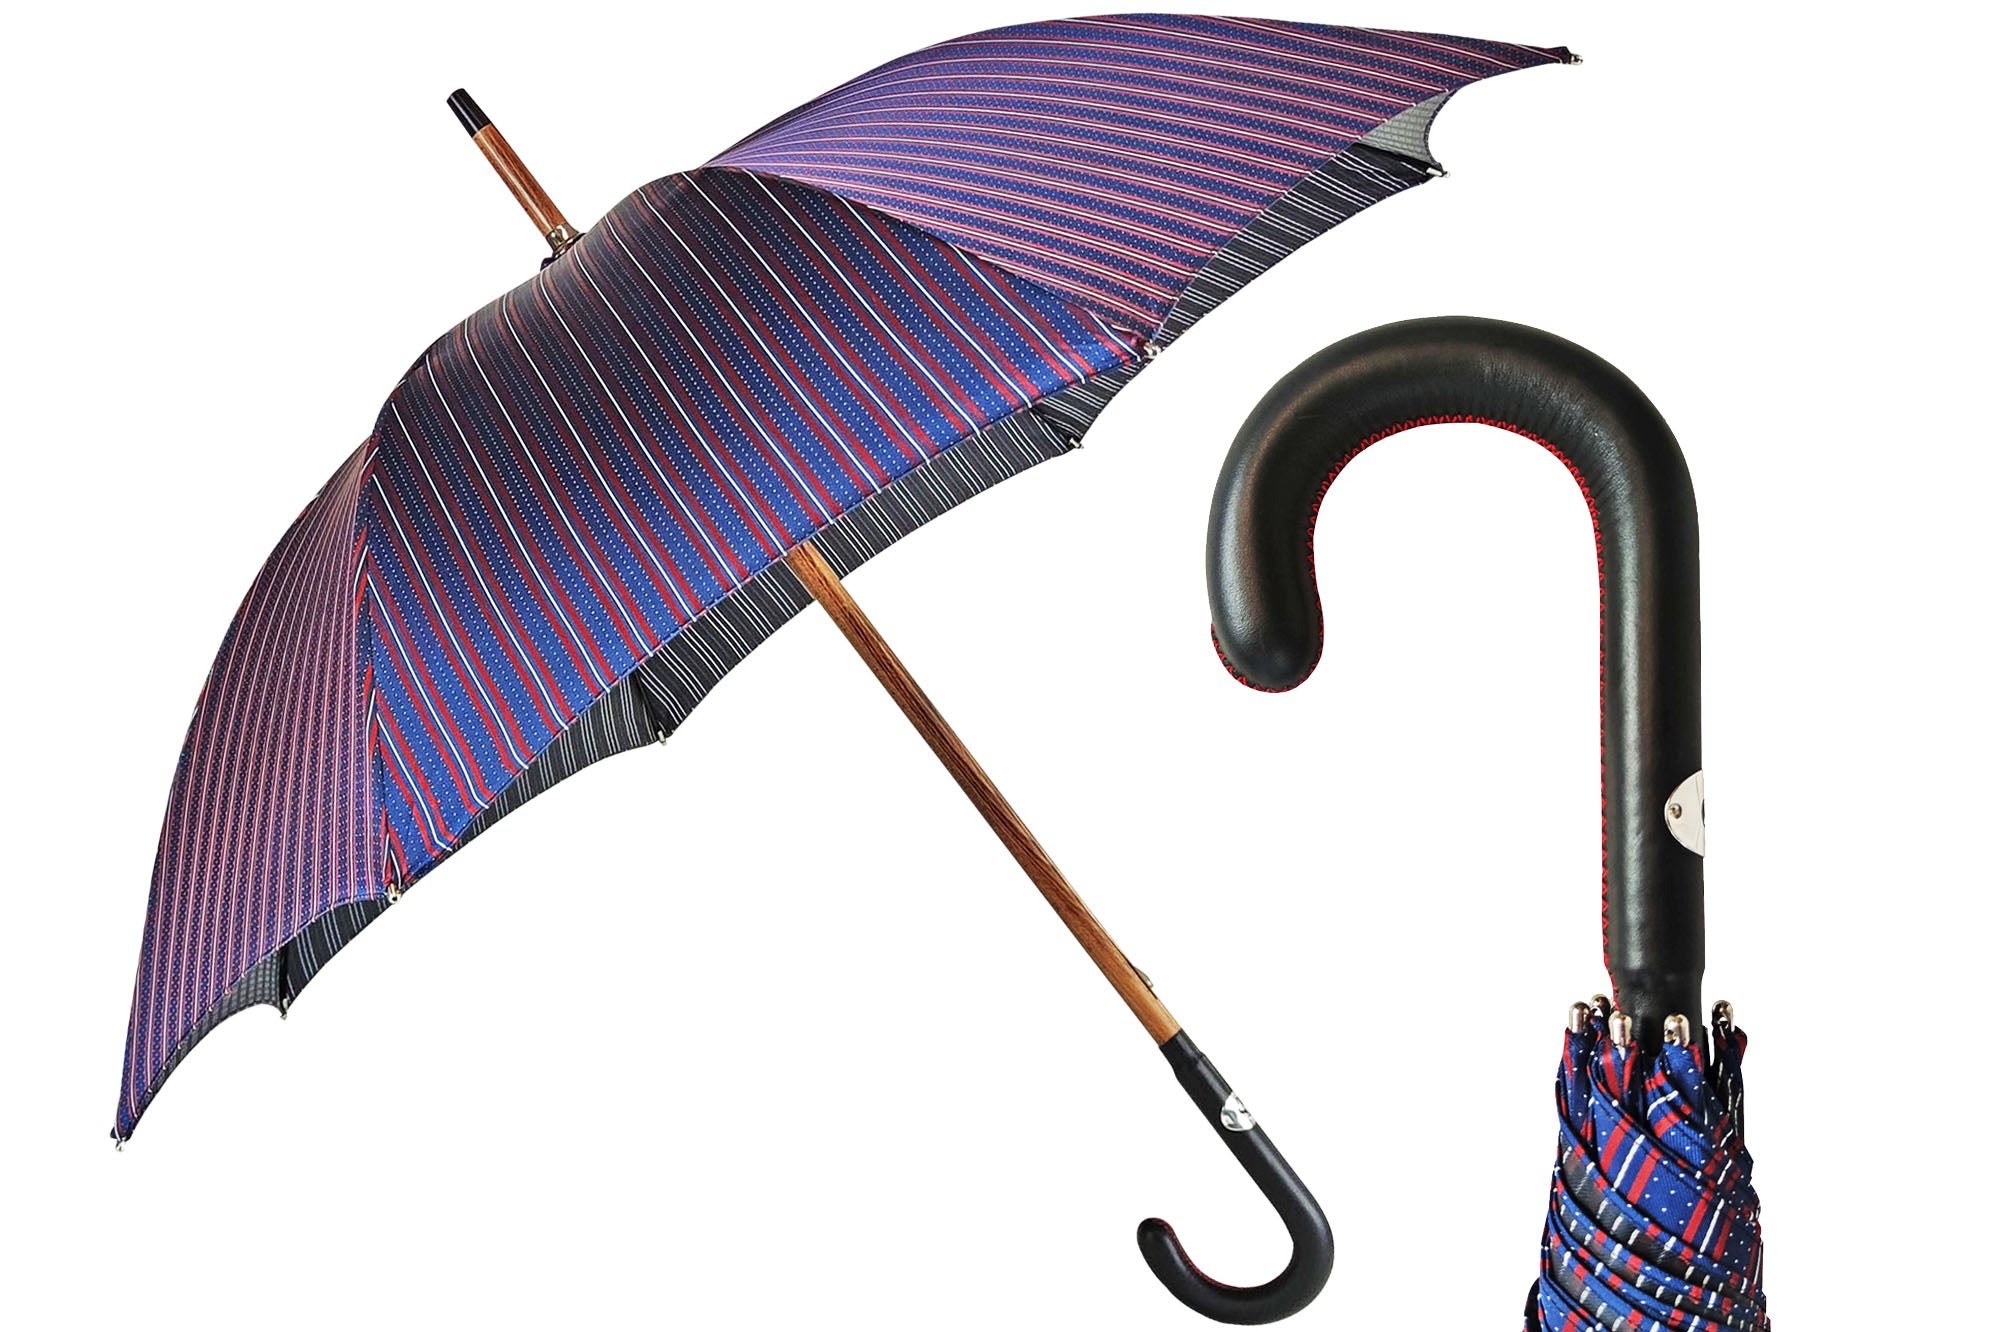 Elegant Men's umbrella with black leather handle